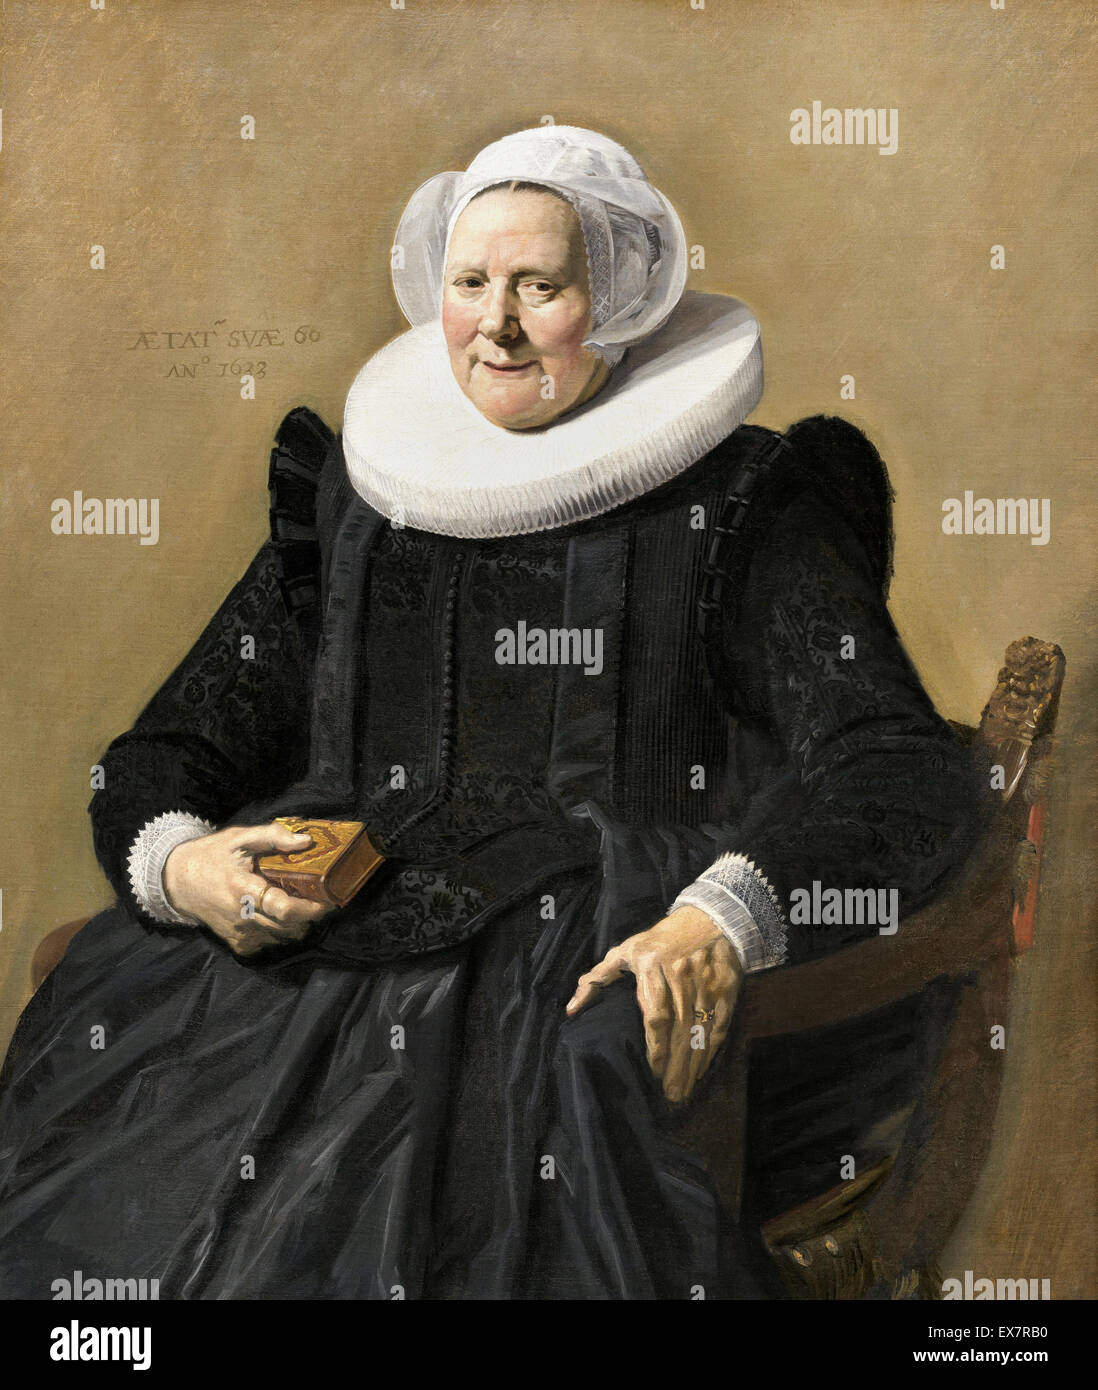 Frans Hals, Portrait d'une femme 1633 Huile sur toile. National Gallery of Art, Washington, D.C., USA. Banque D'Images